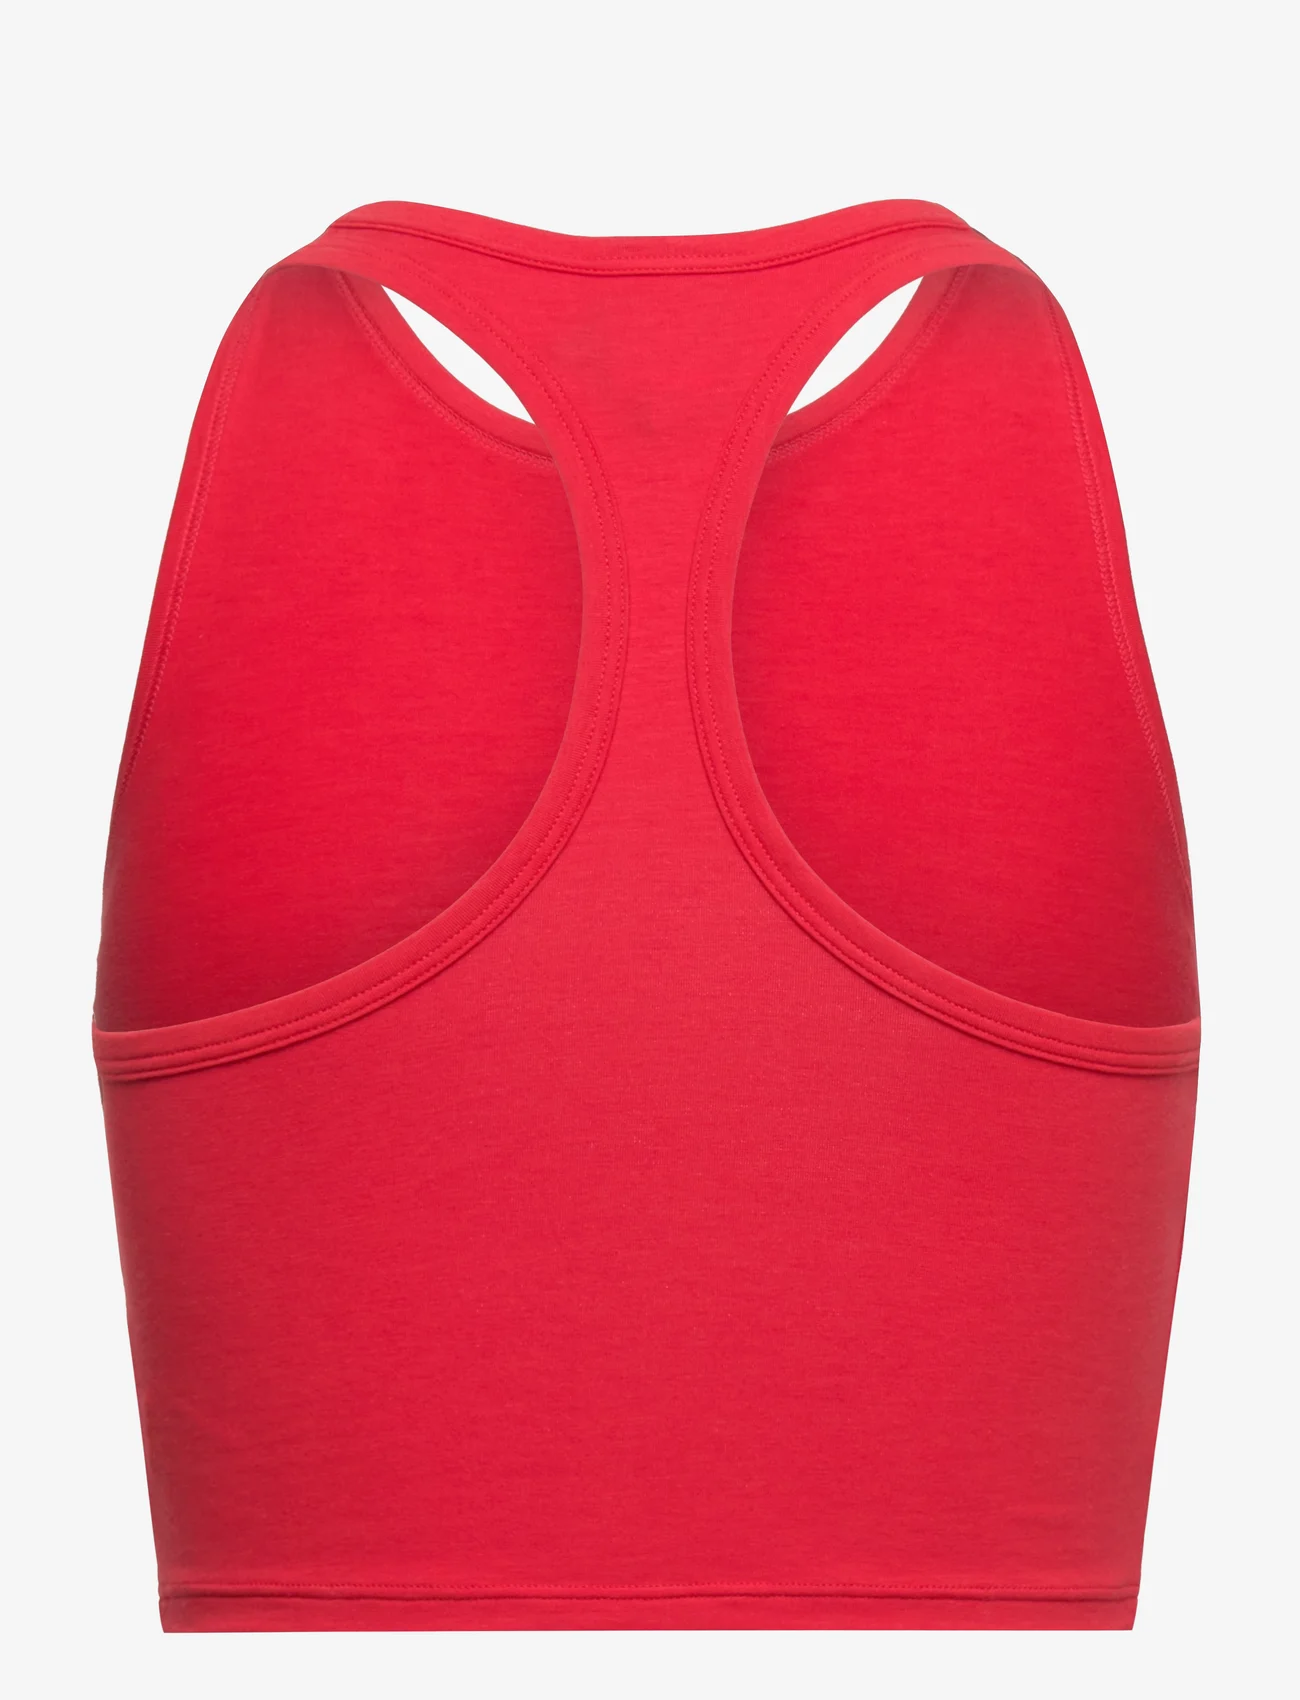 adidas Originals Underwear - Bustier - lowest prices - red - 1